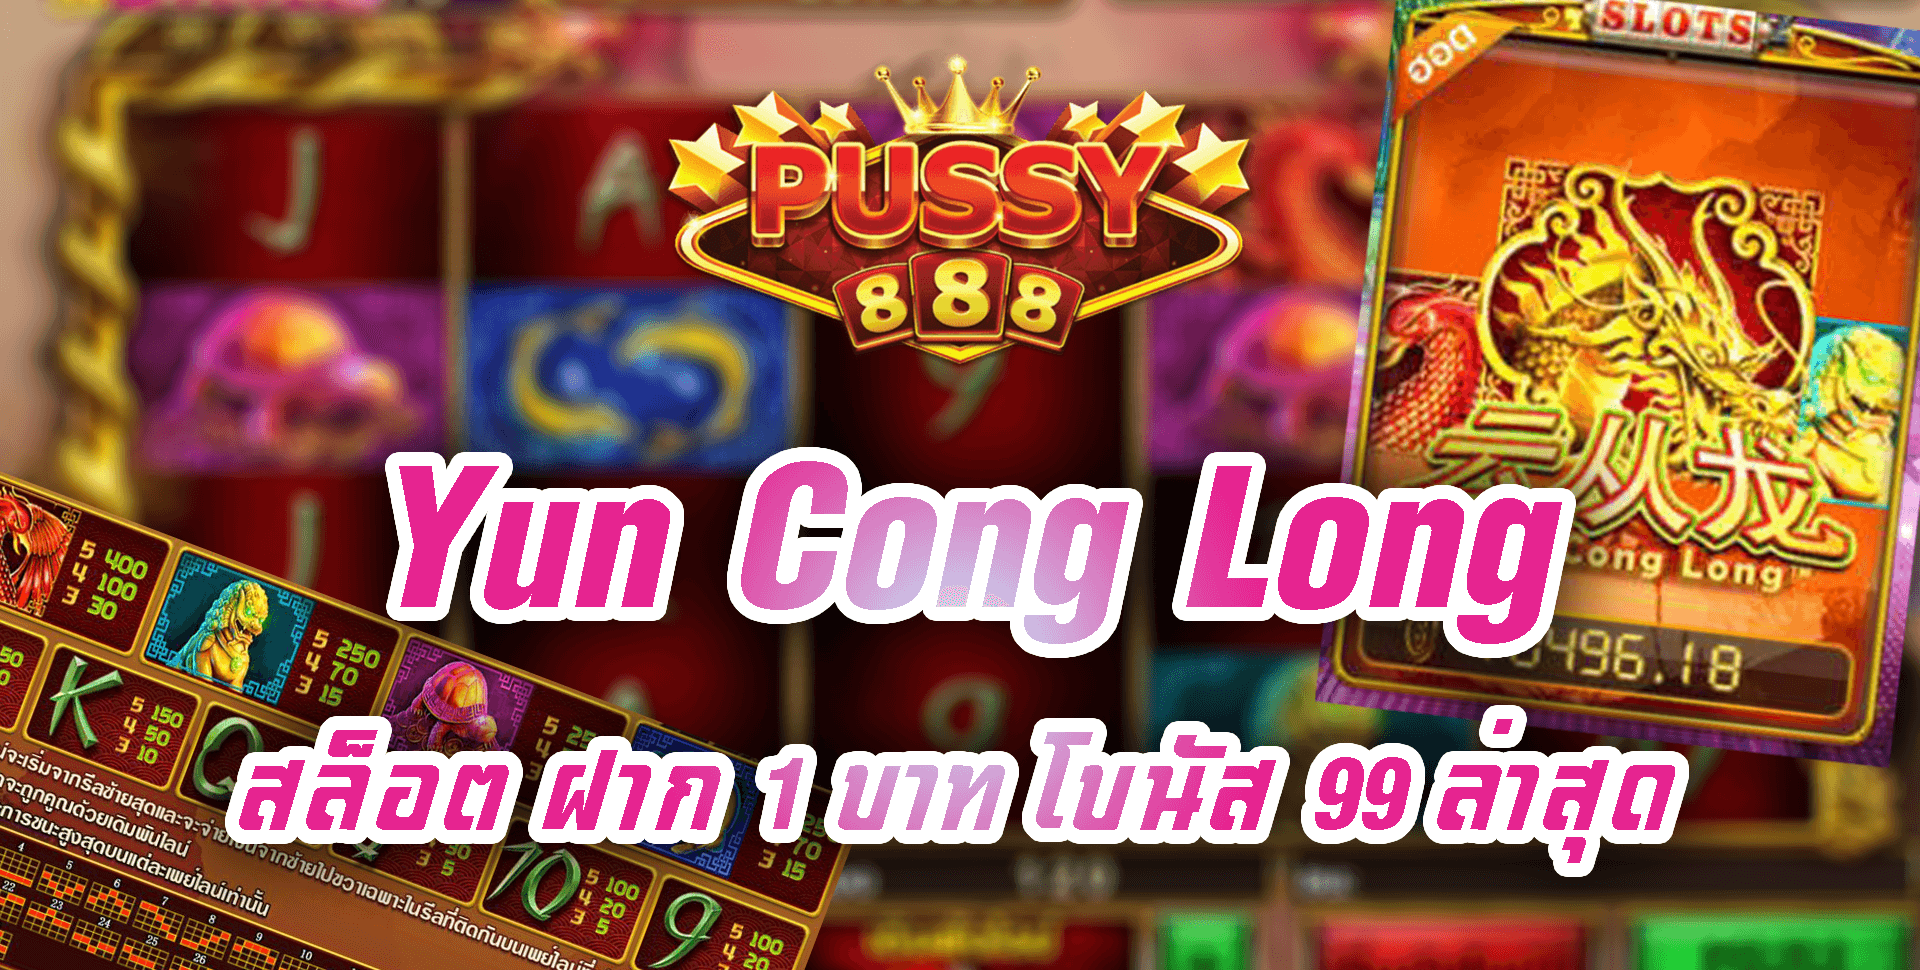 Pussy888-Yun Cong Long-5